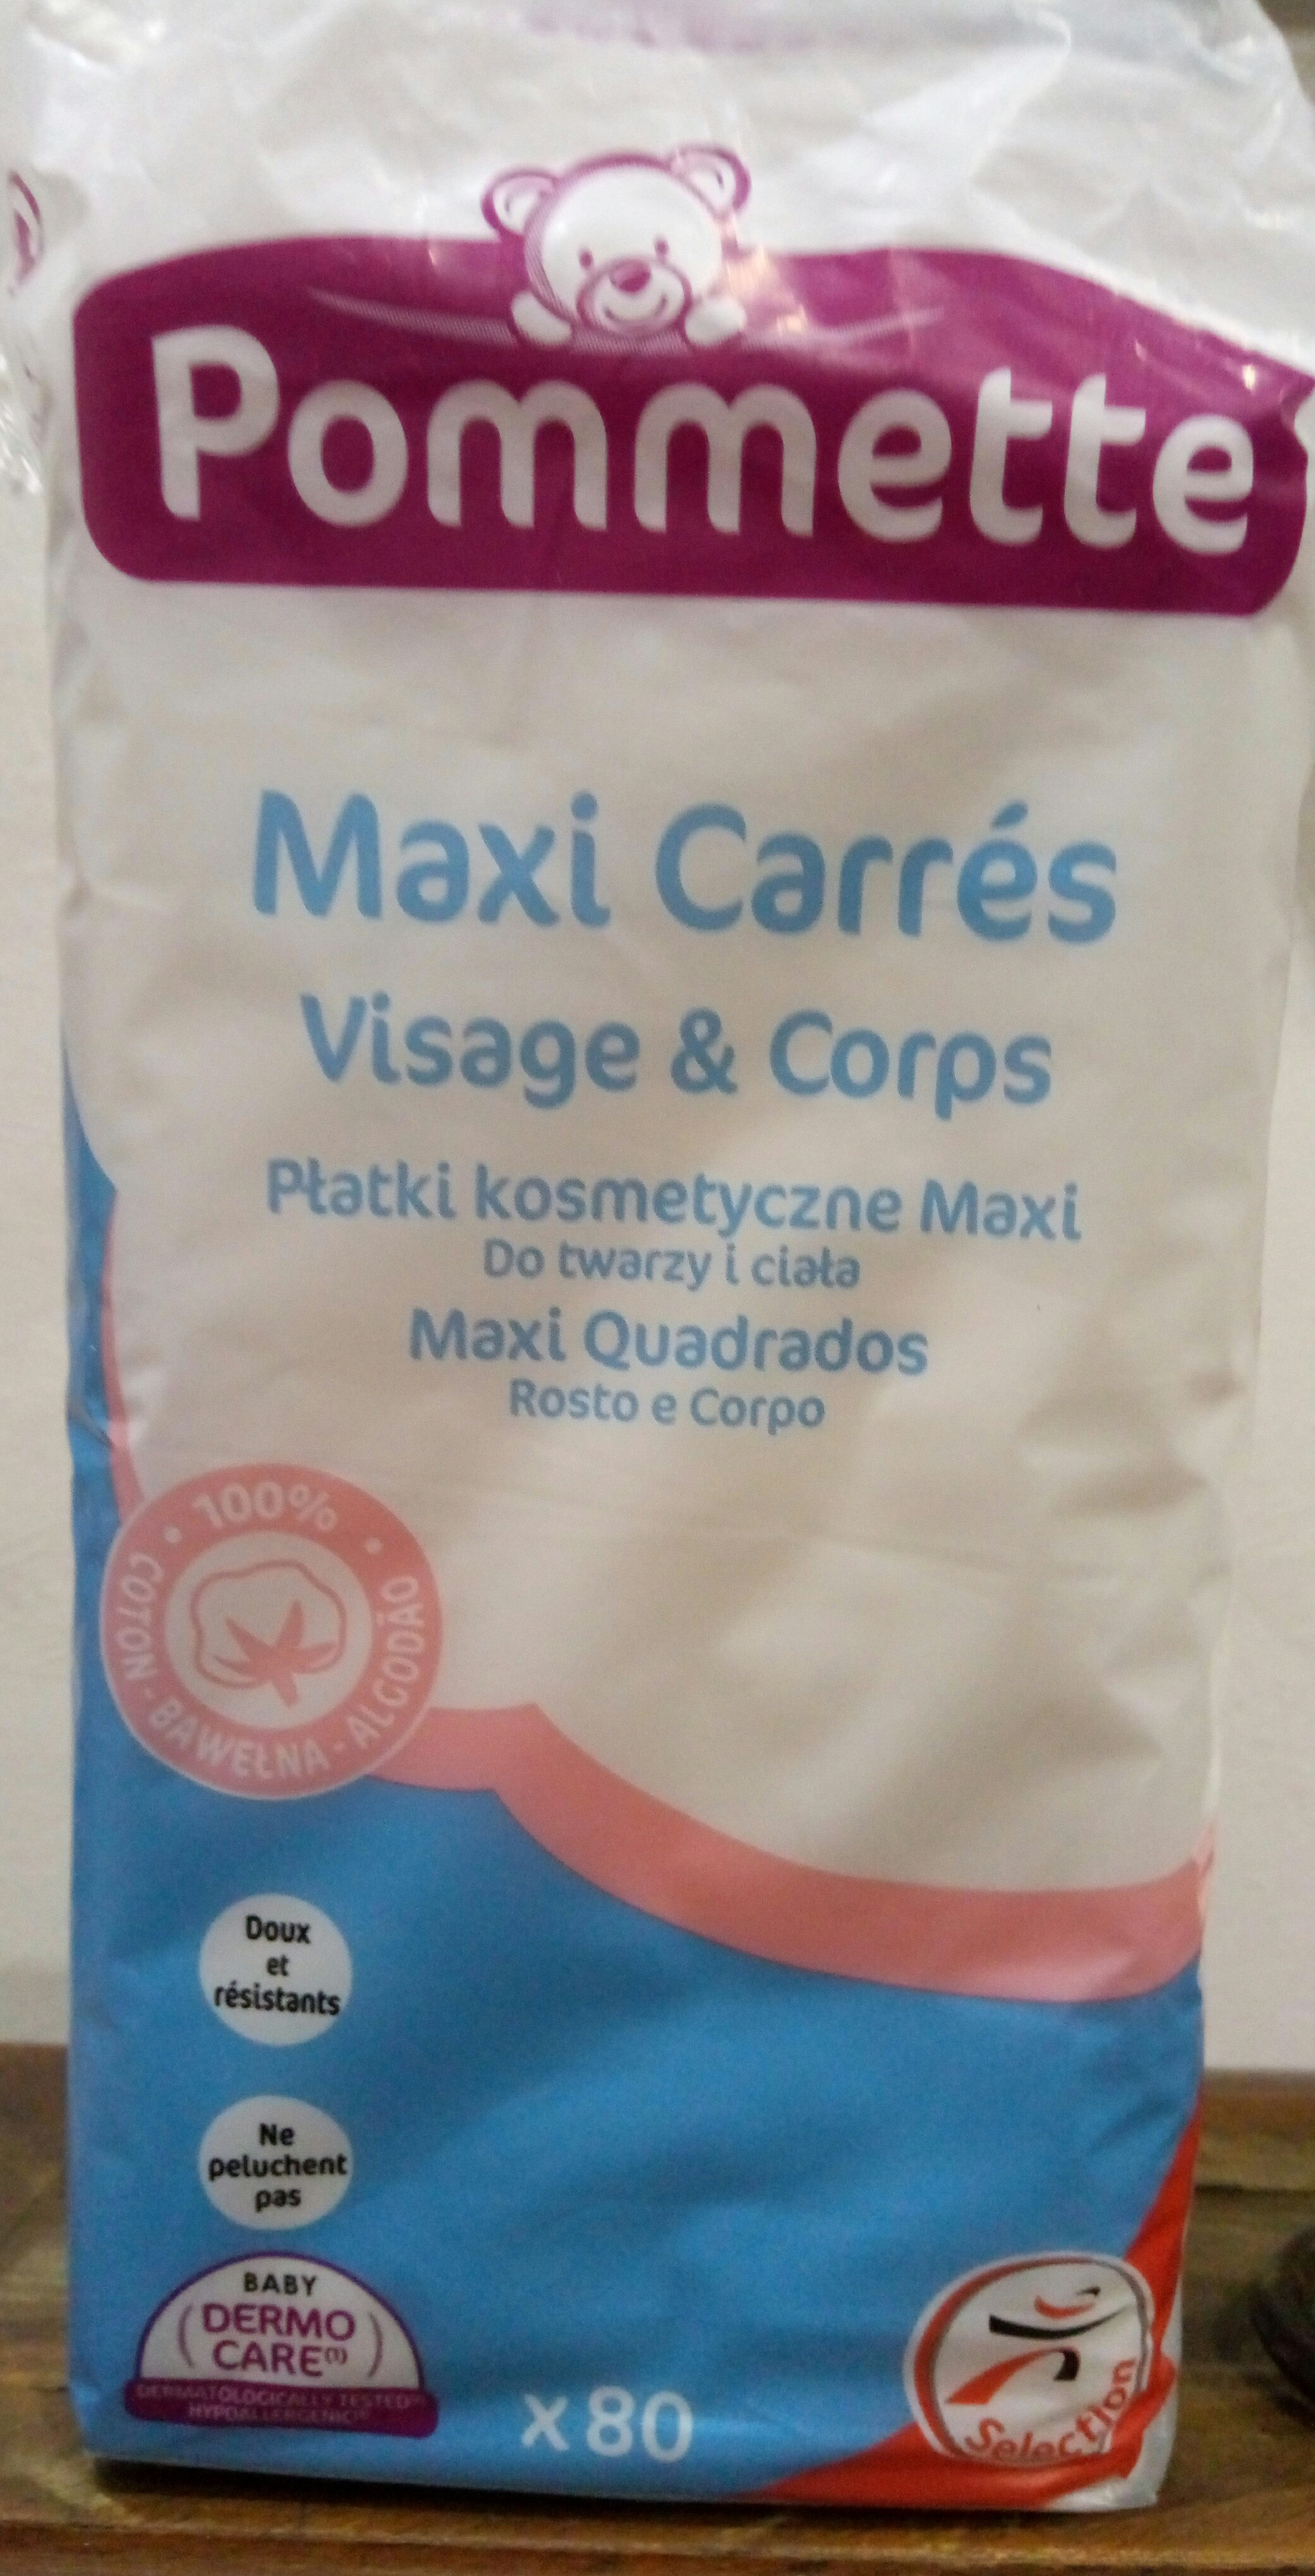 Maxi carrés Visage & Corps - Produit - fr